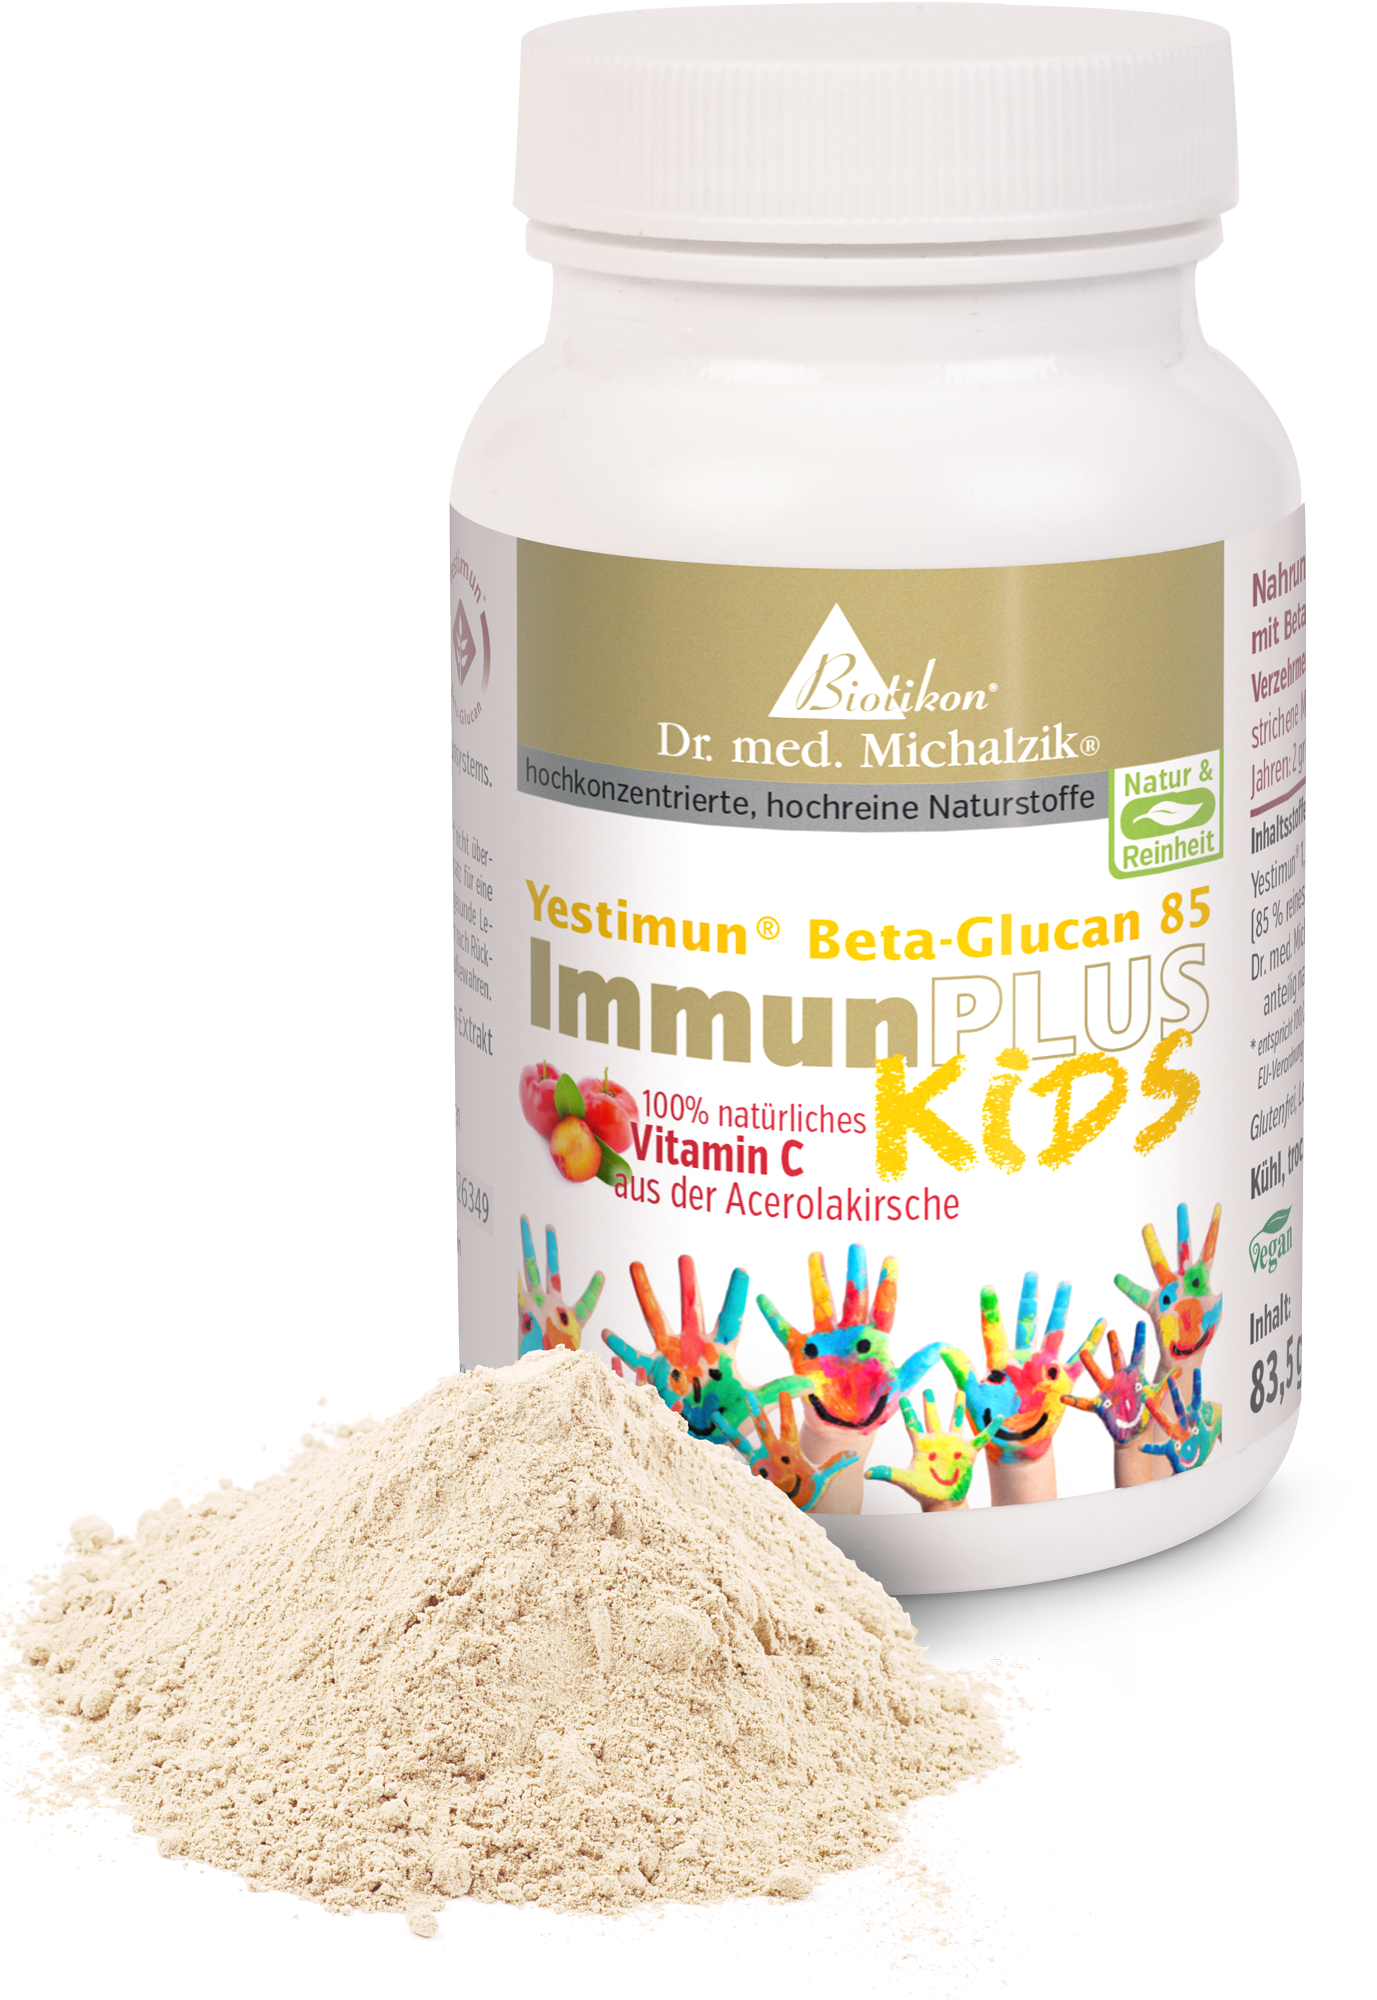 ImmunePLUS Kids by Dr. med. Michalzik